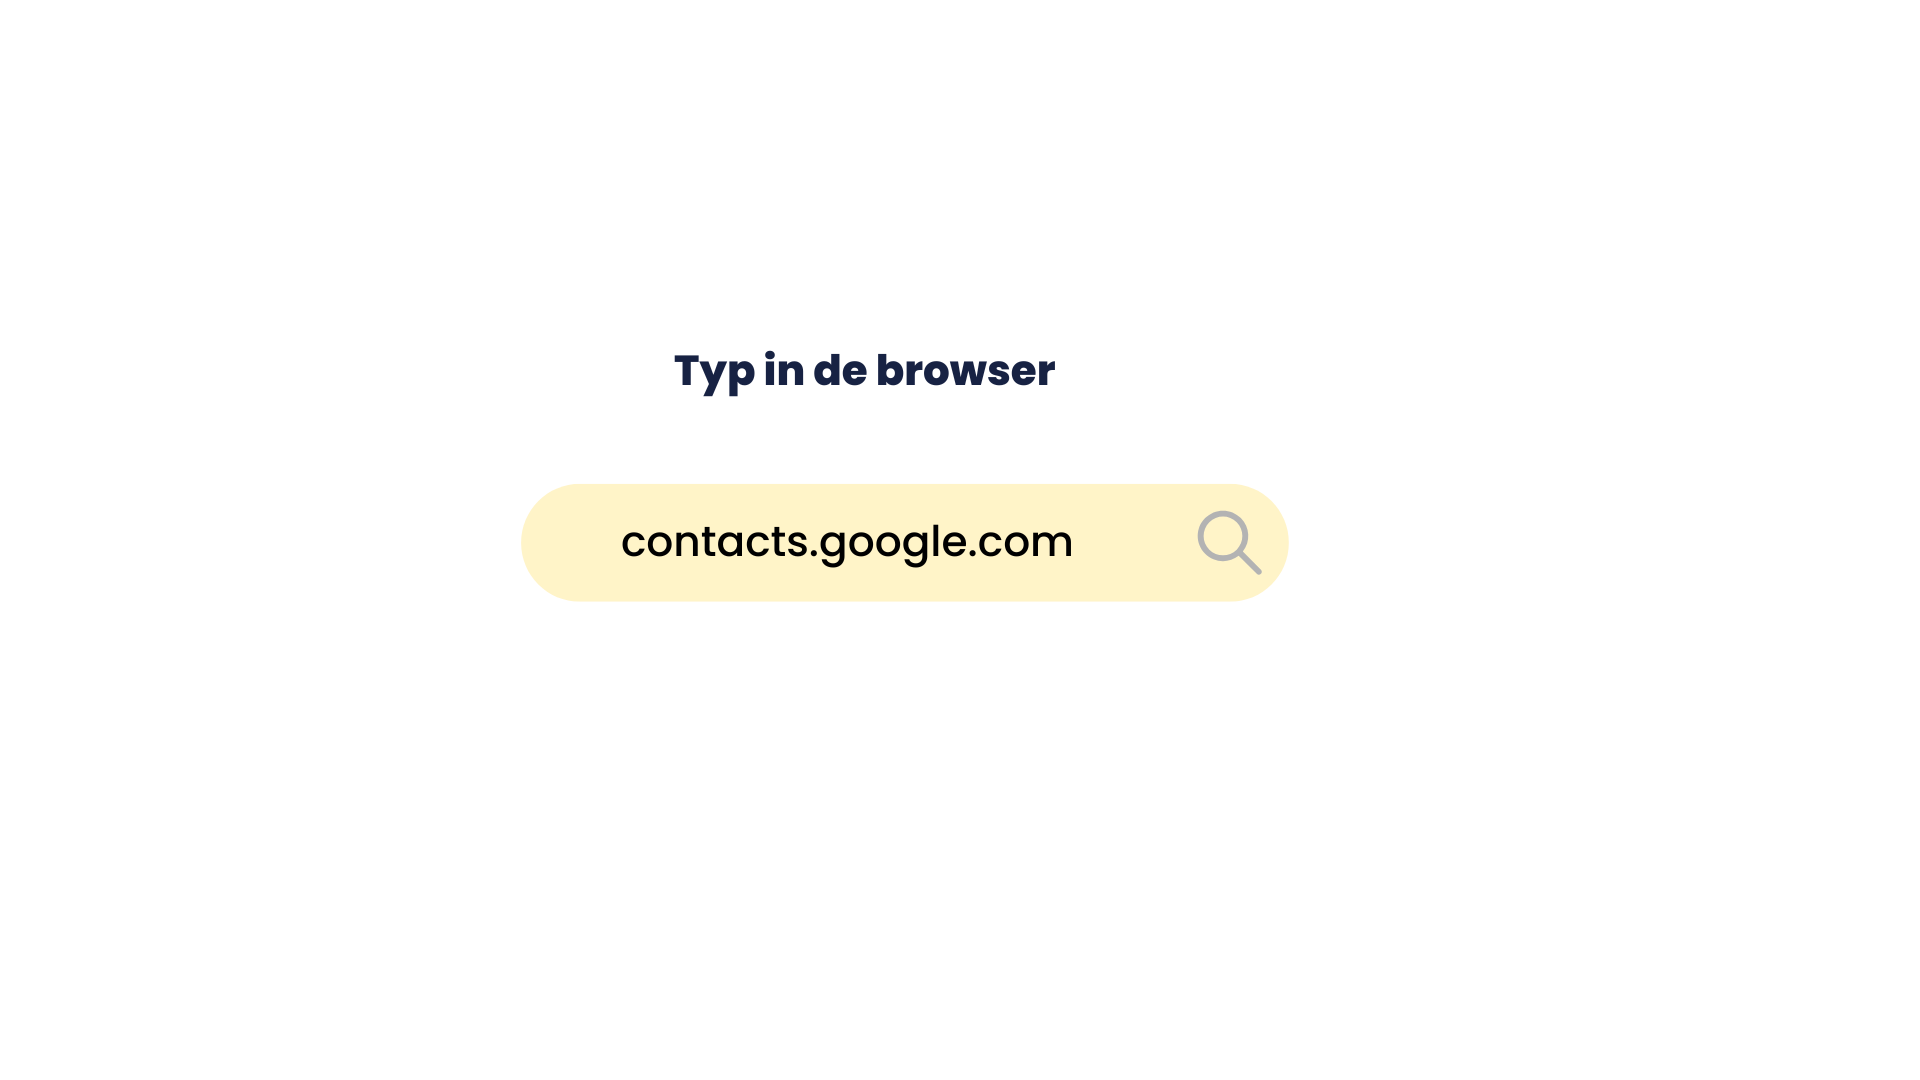 type in de browser contacts.google.com